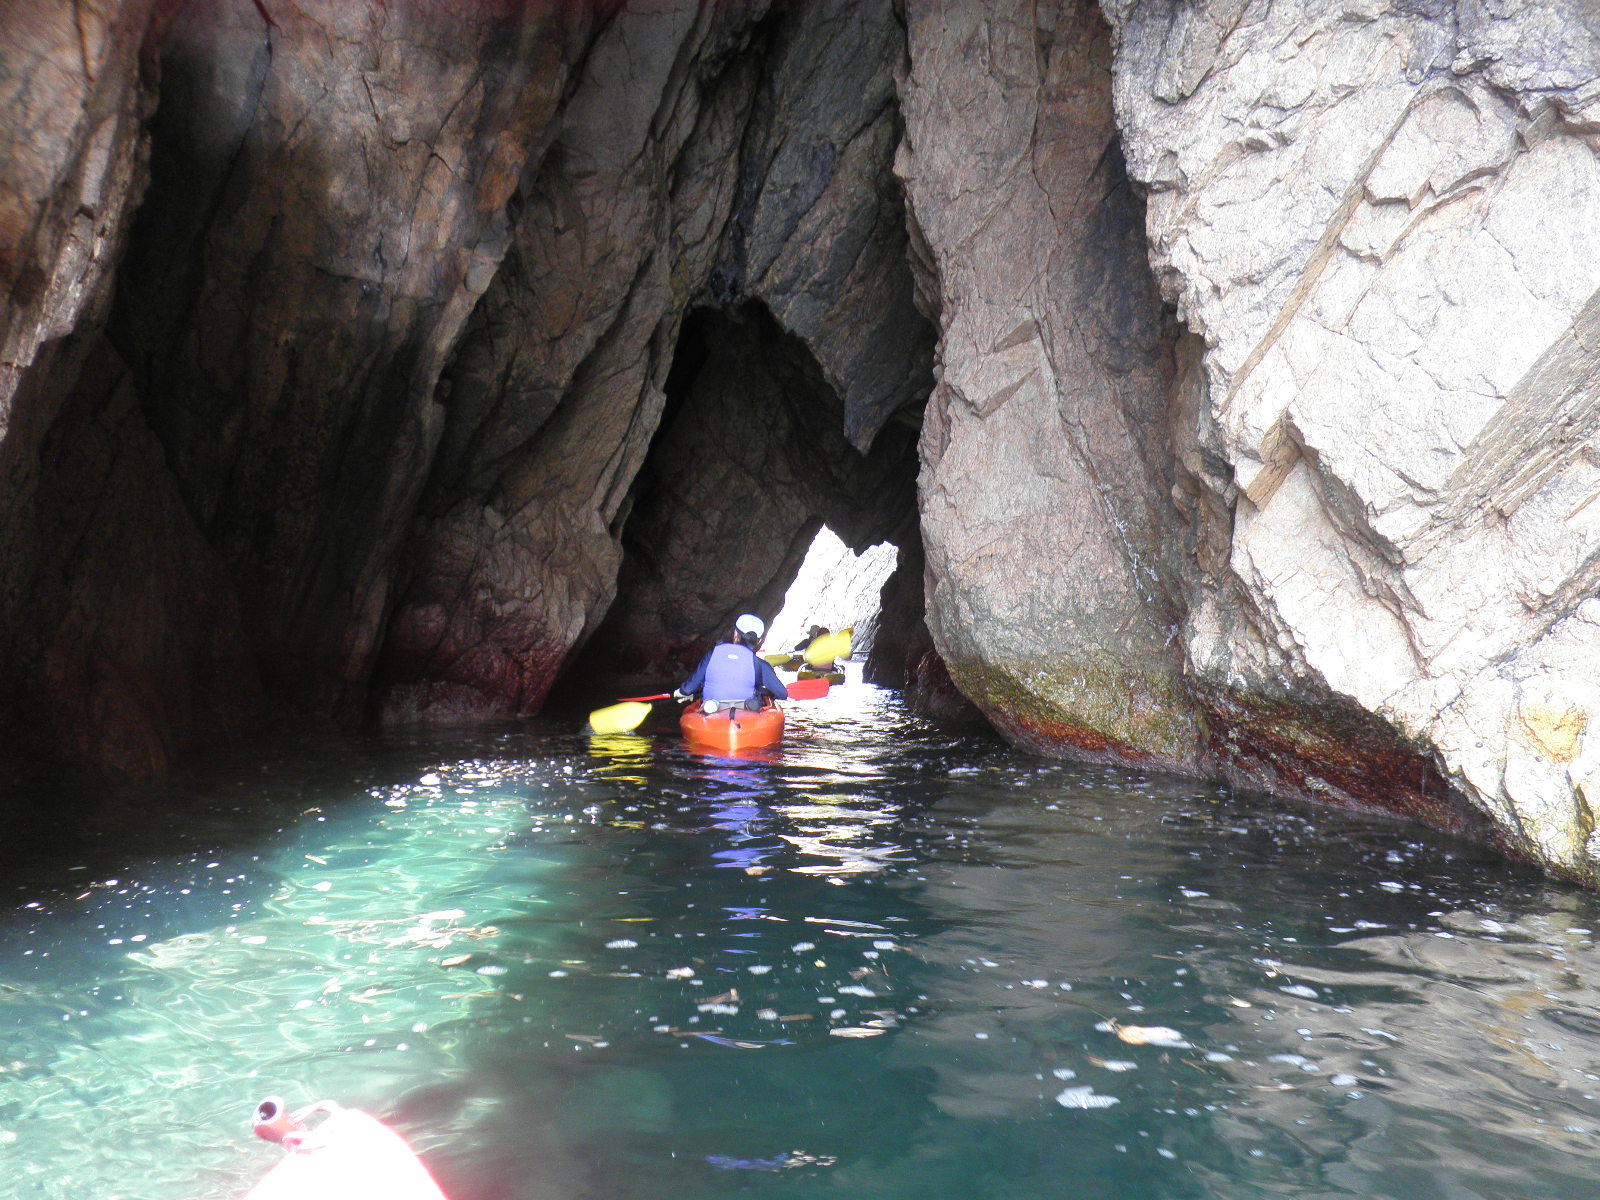 たくさんの洞窟をカヌーで探検する